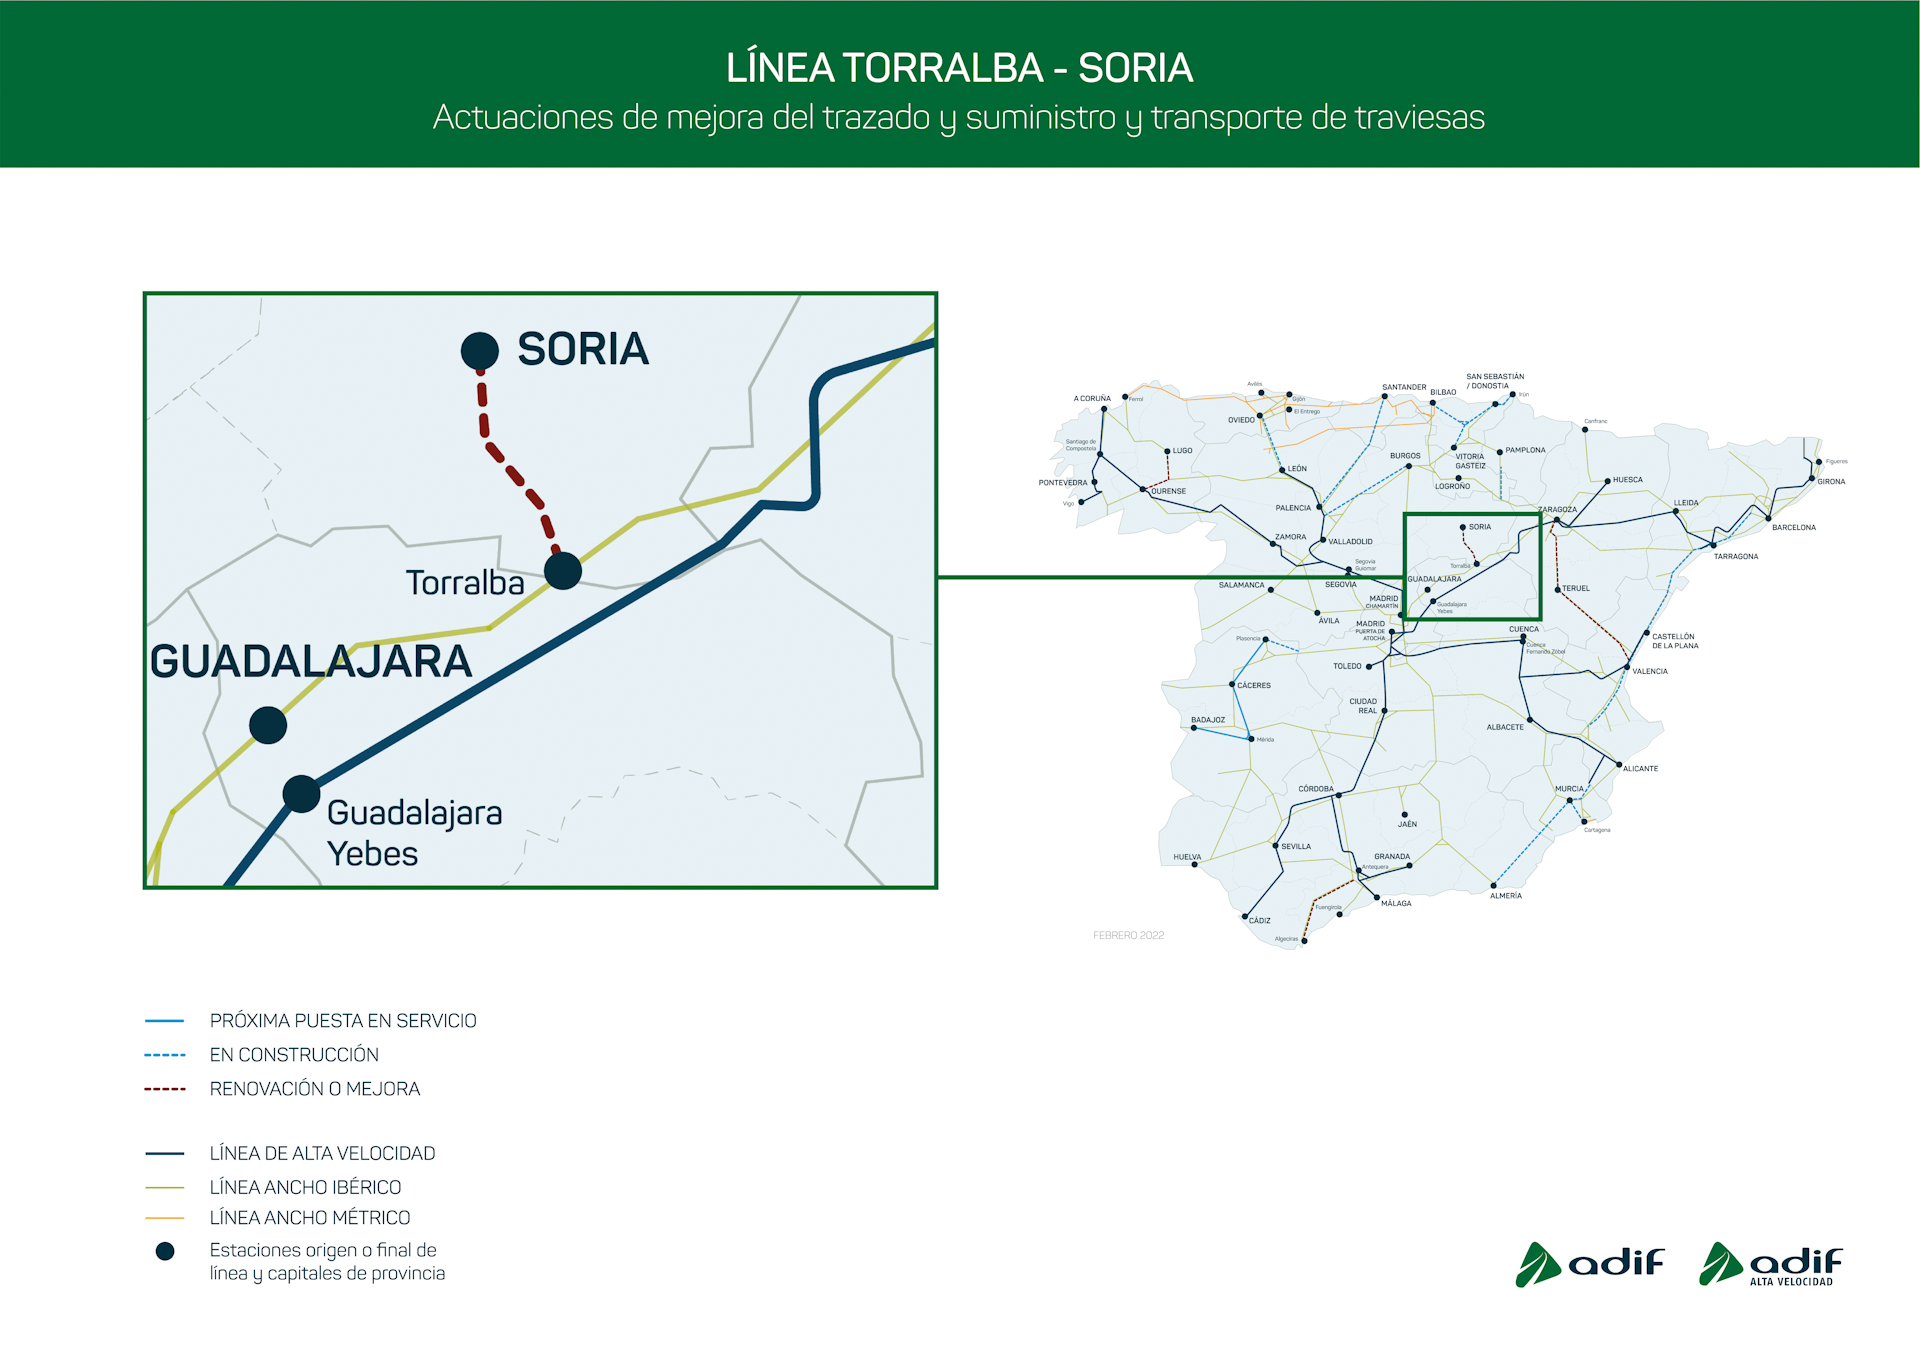 Adif adjudica por importe superior a 27,3 M€ la renovación de vía y el suministro de traviesas para mejorar la línea Torralba-Soria